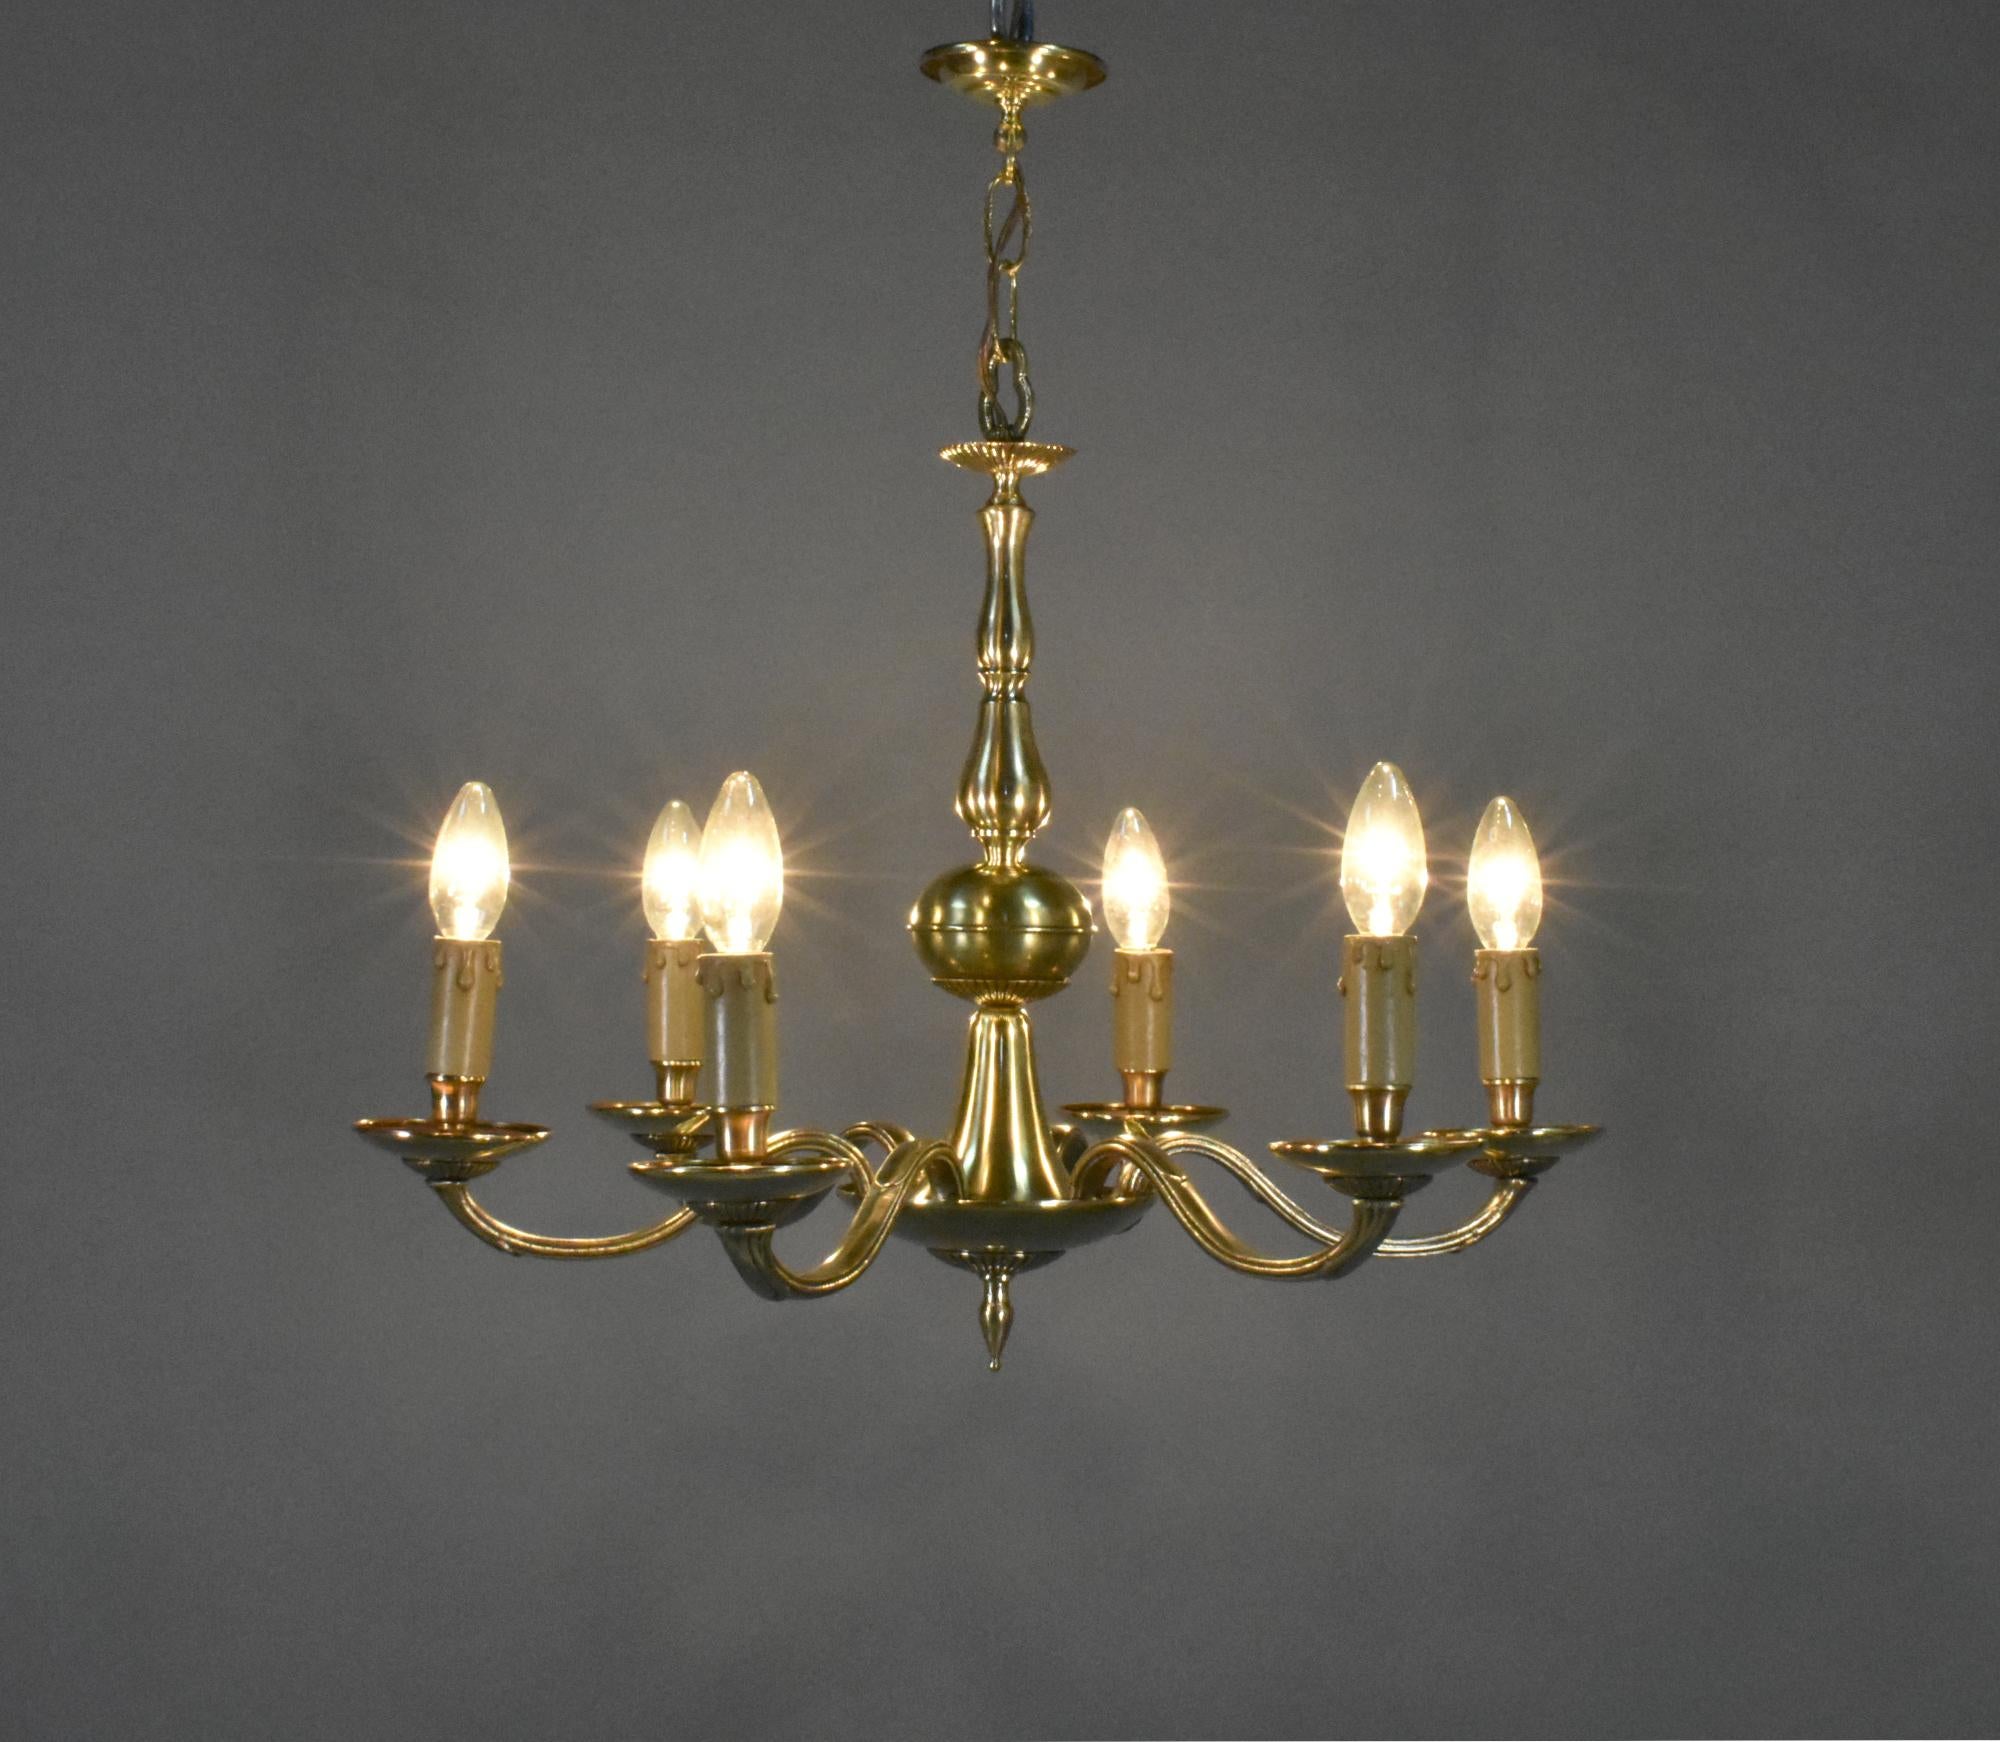 Lustre français ancien à six lumières en bronze de style Louis XVI 

Cet élégant lustre à six lumières en bronze est suspendu par des maillons de chaîne décoratifs à la rosace du plafond. 

La colonne centrale tournée descend jusqu'à la coupelle